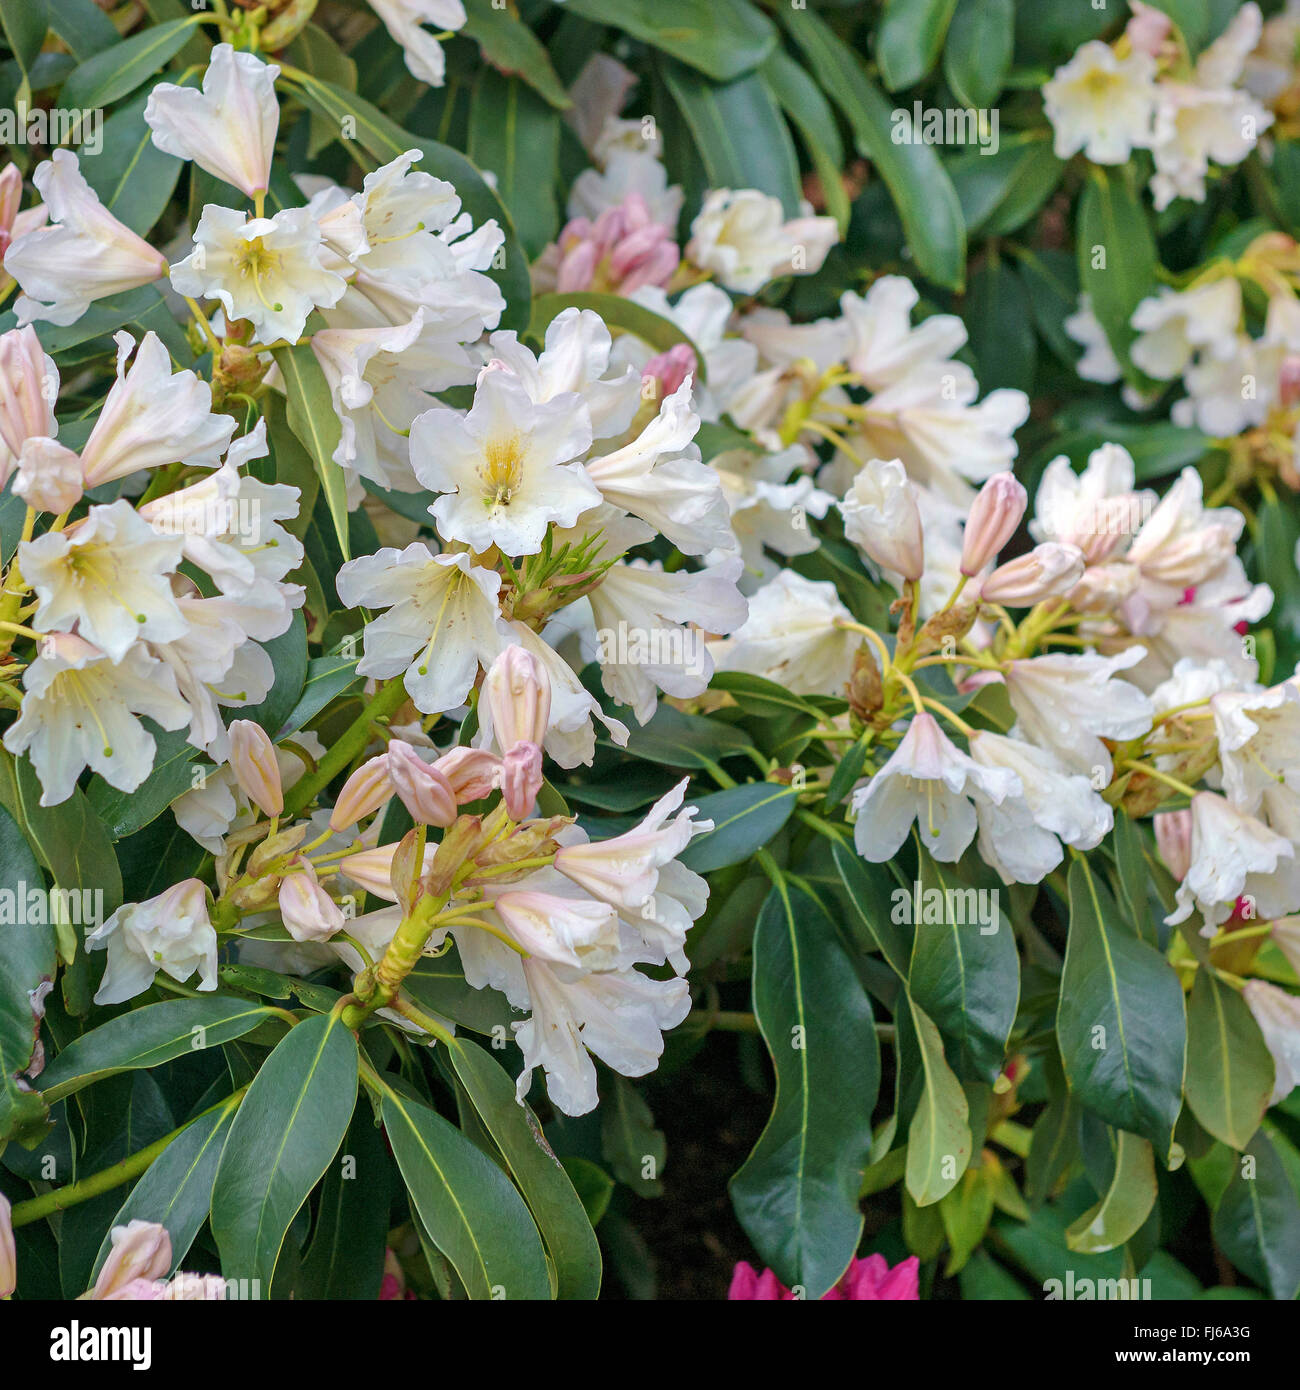 rhododendron (Rhododendron 'Dufthecke', Rhododendron Dufthecke), cultivar Dufthecke Stock Photo